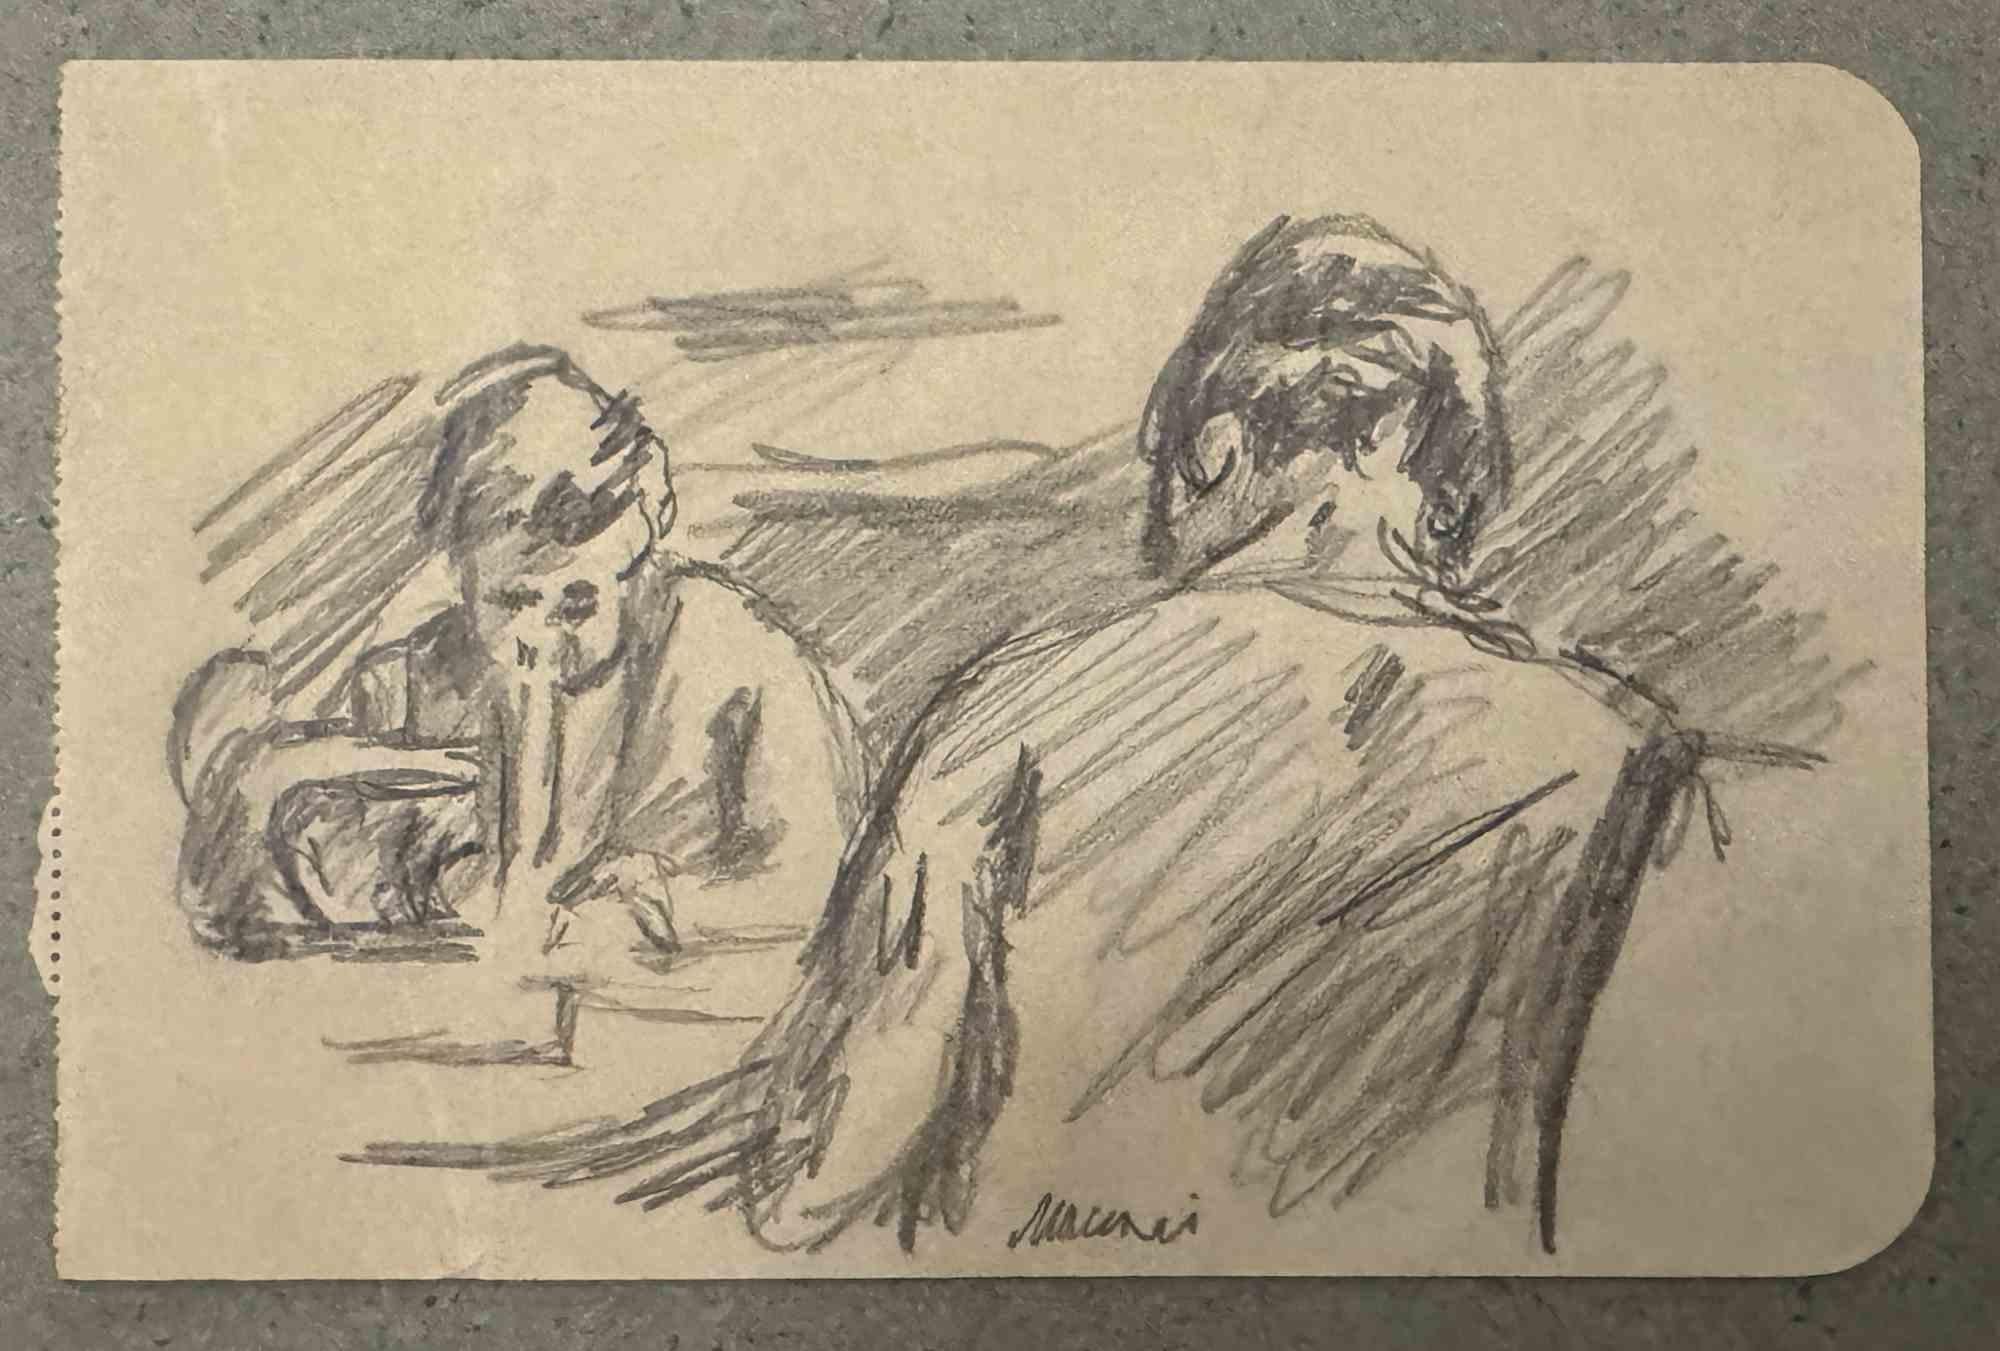 Meeting est un dessin au fusain réalisé par Mino Maccari (1924-1989) au milieu du 20e siècle.

Signé à la main.

Bon état avec de légères rousseurs.

Mino Maccari (Sienne, 1924-Rome, 16 juin 1989) est un écrivain, peintre, graveur et journaliste